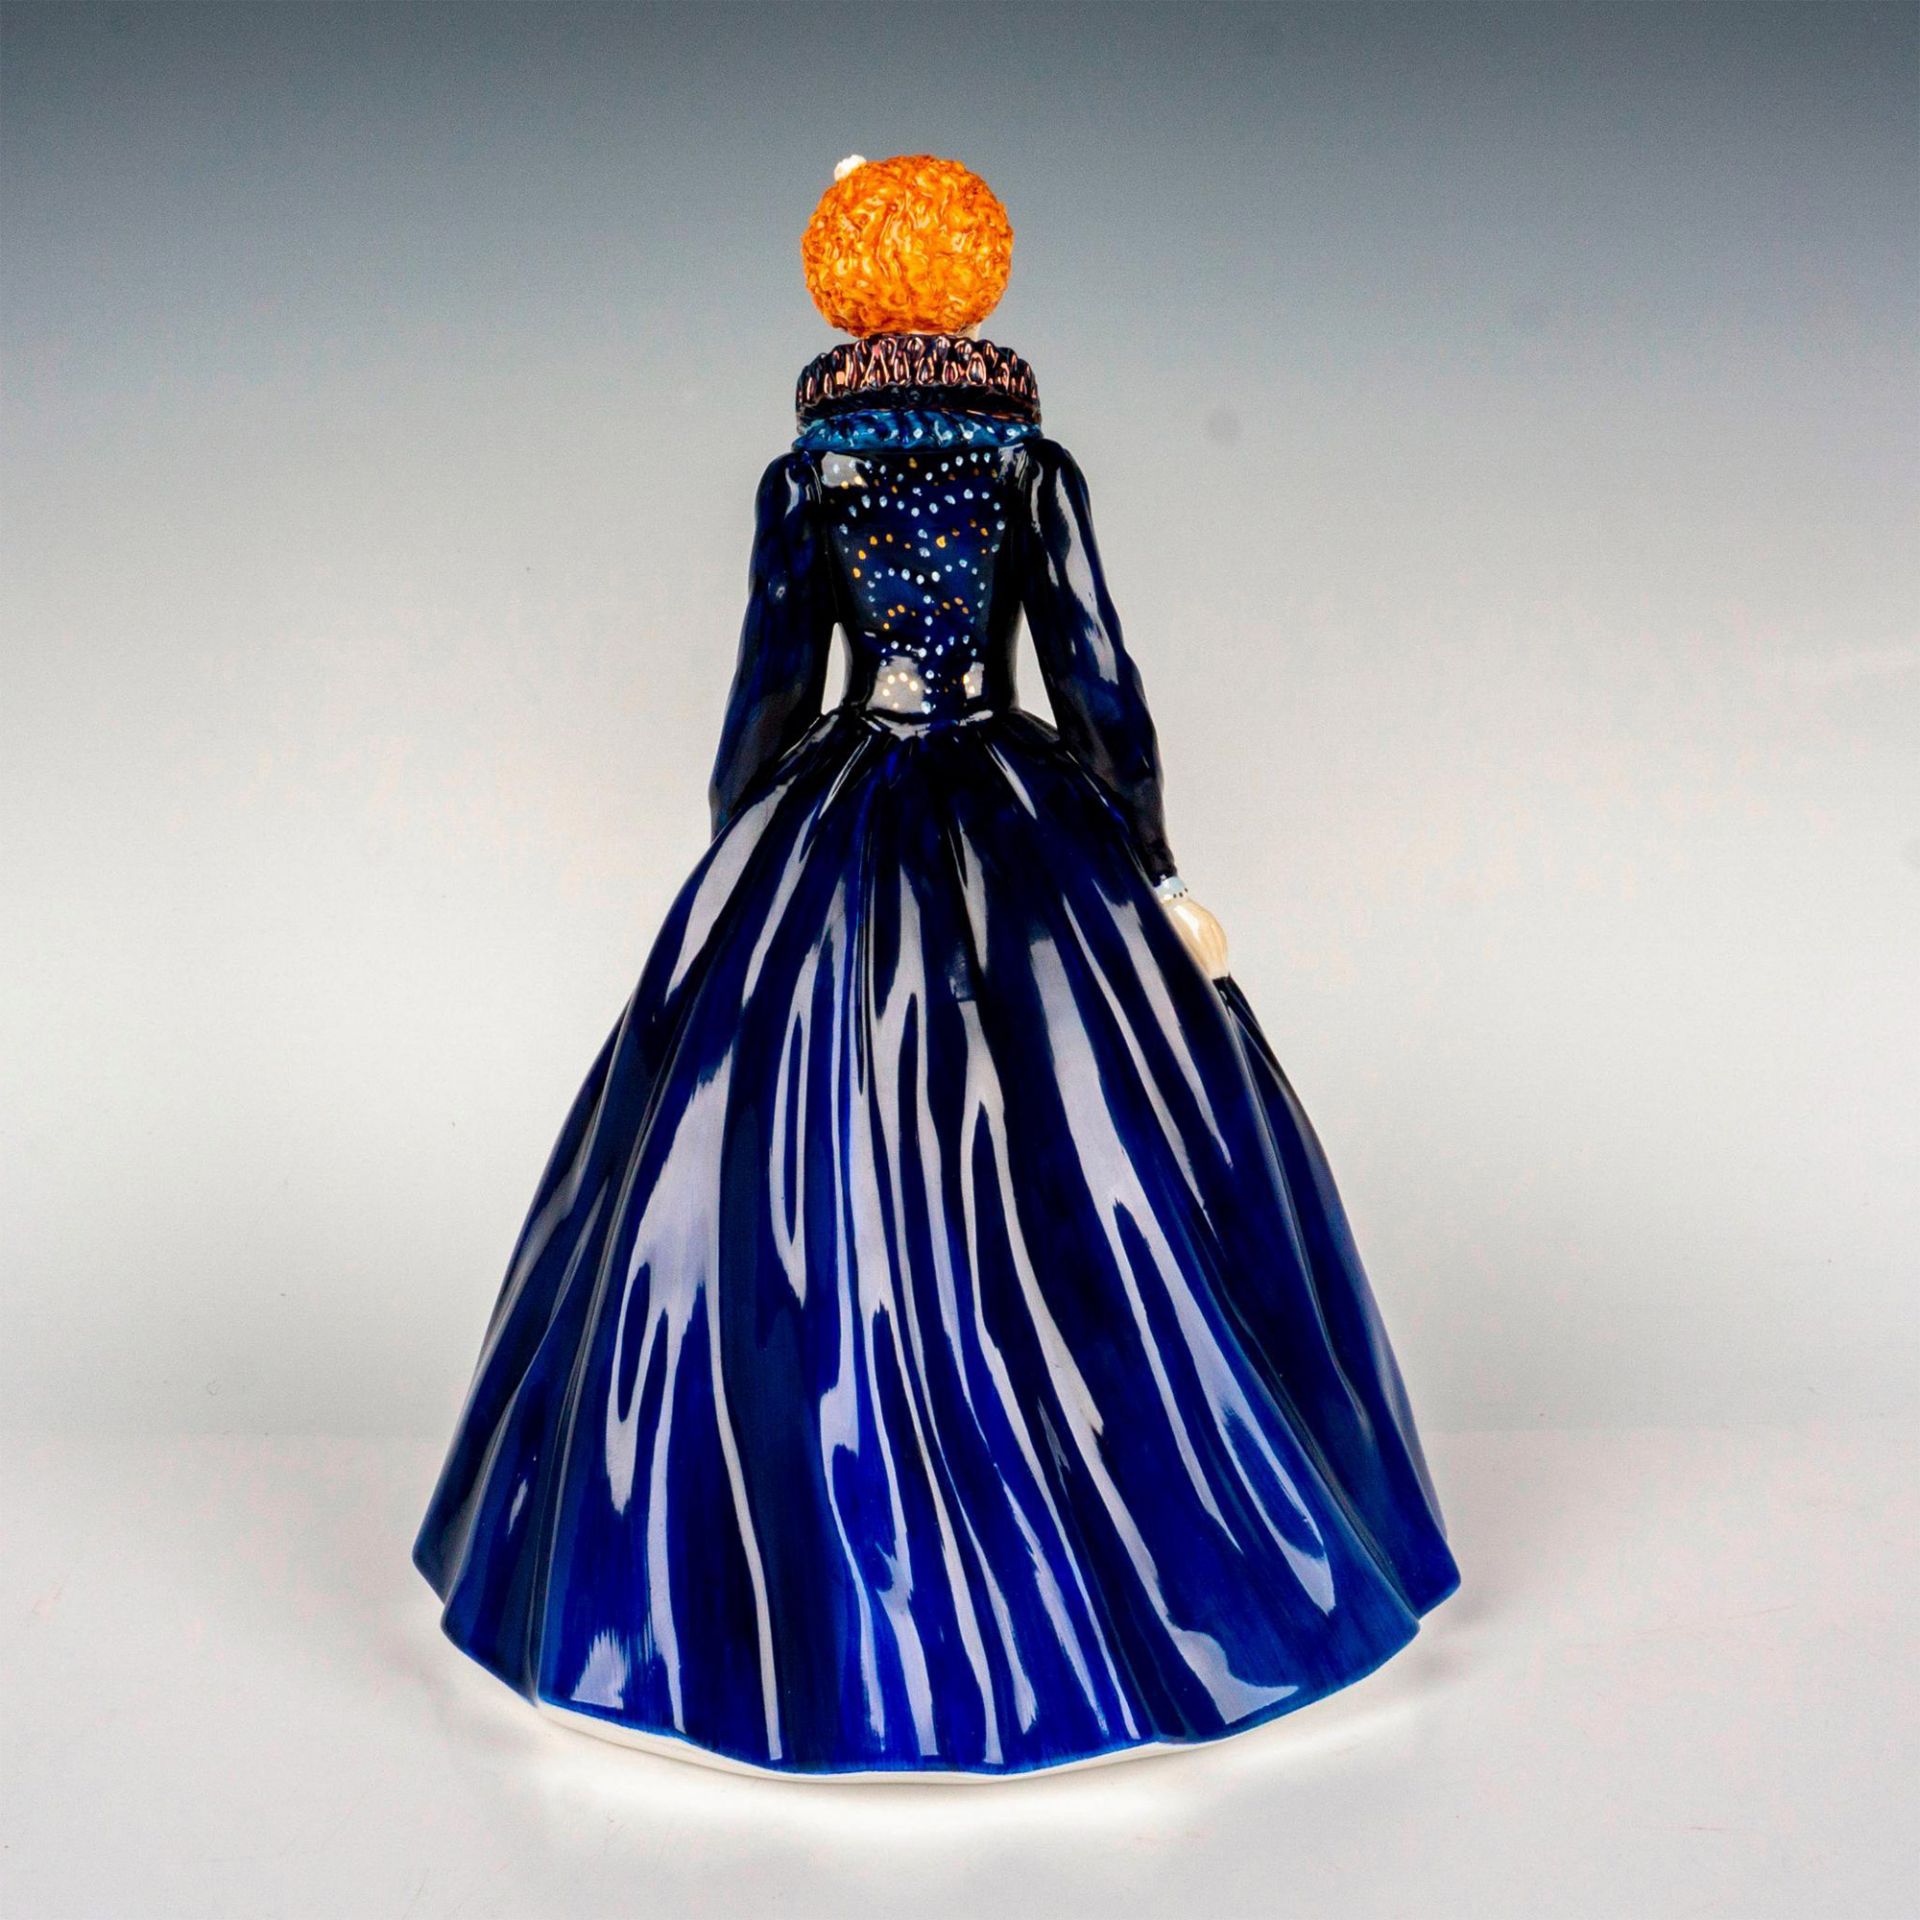 Queen Elizabeth I HN5704 Prototype Colorway - Royal Doulton Figurine - Image 2 of 4